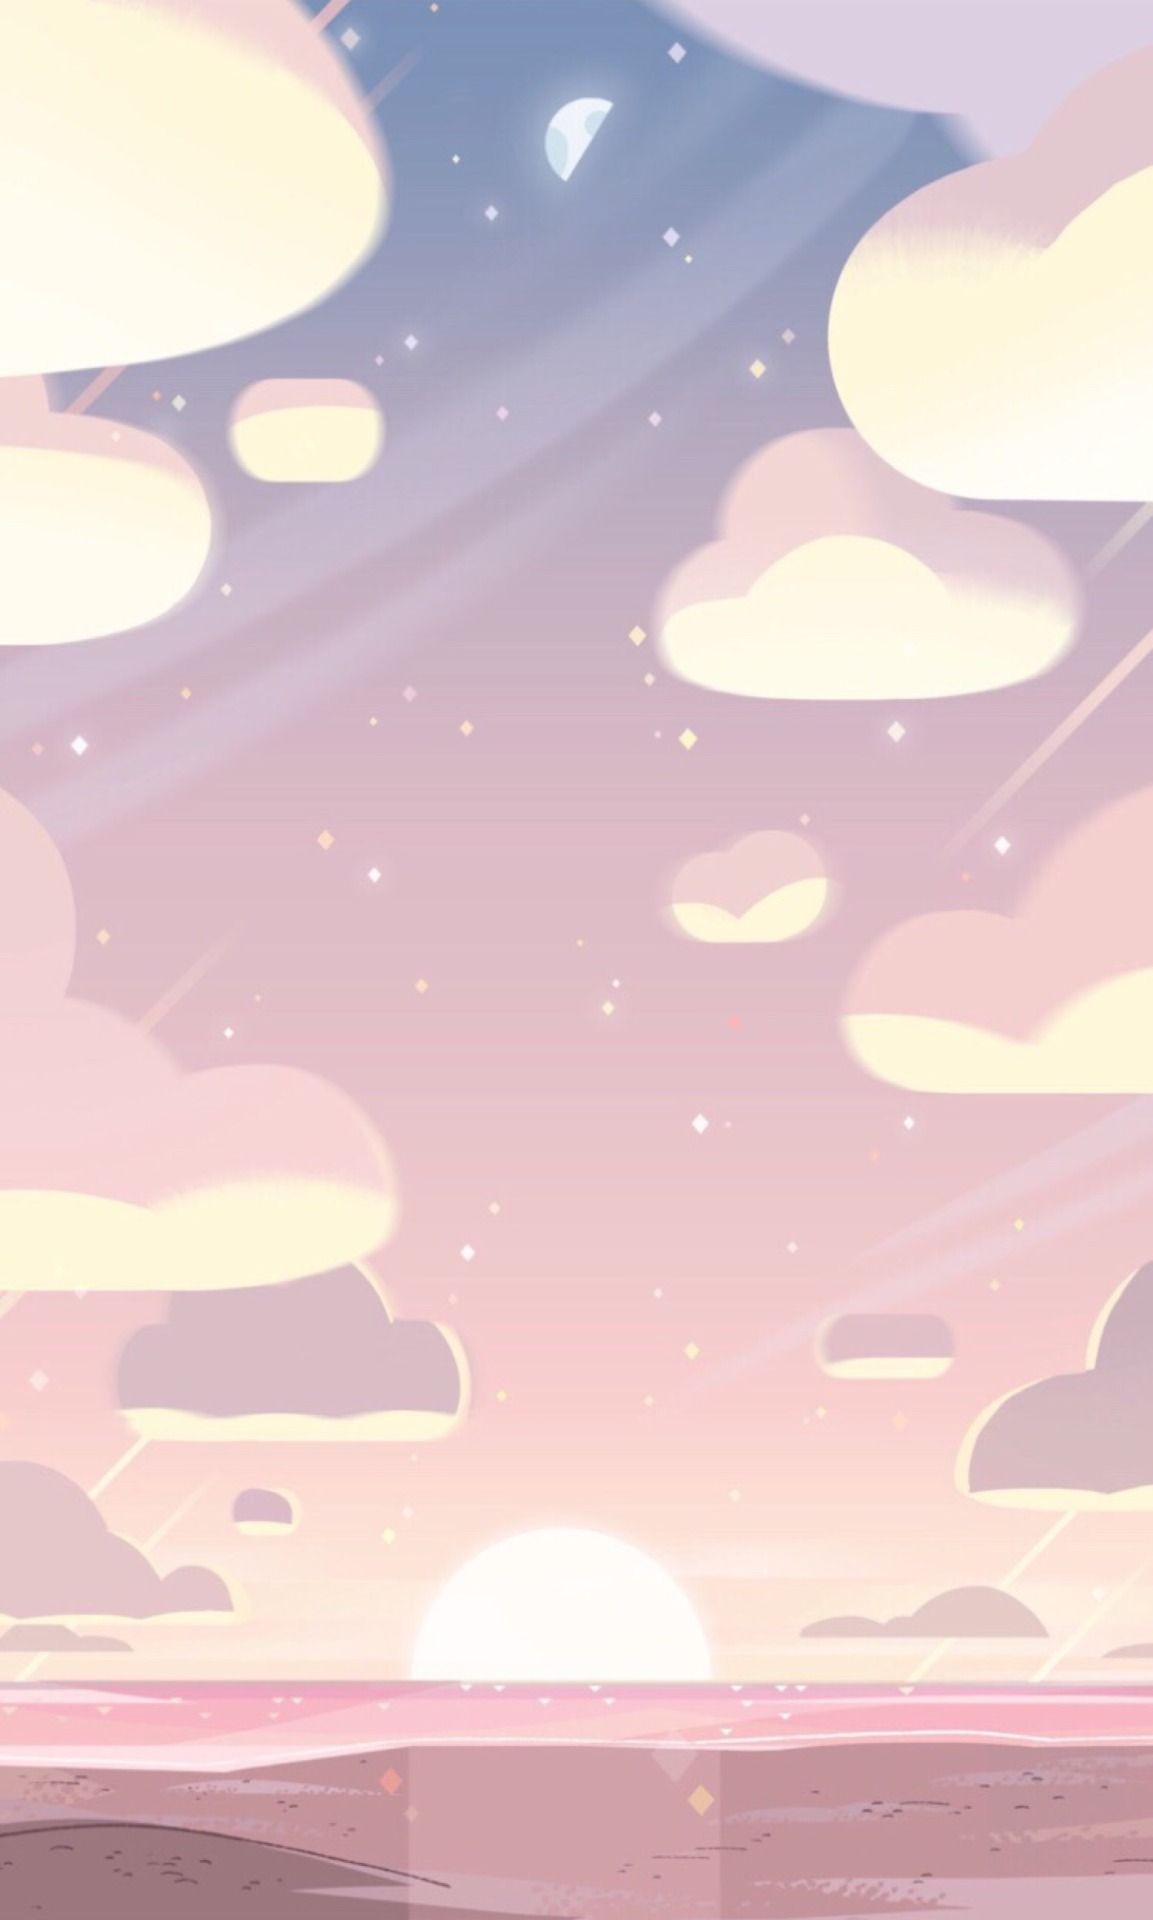 iPhone Wallpaper. Sky, Pink, Cloud, Pattern, Design, Material